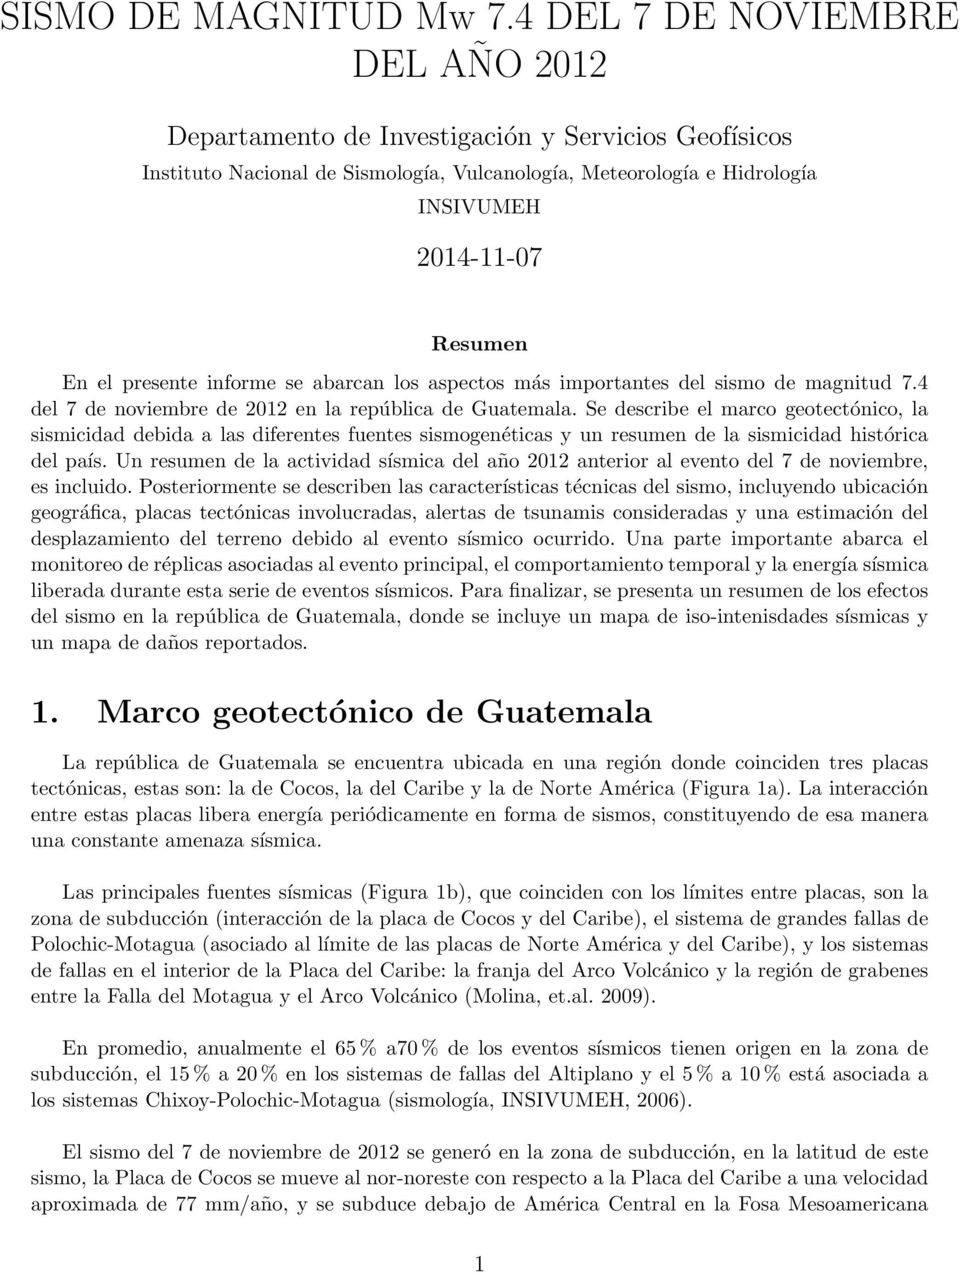 presente informe se abarcan los aspectos más importantes del sismo de magnitud 7.4 del 7 de noviembre de 2012 en la república de Guatemala.